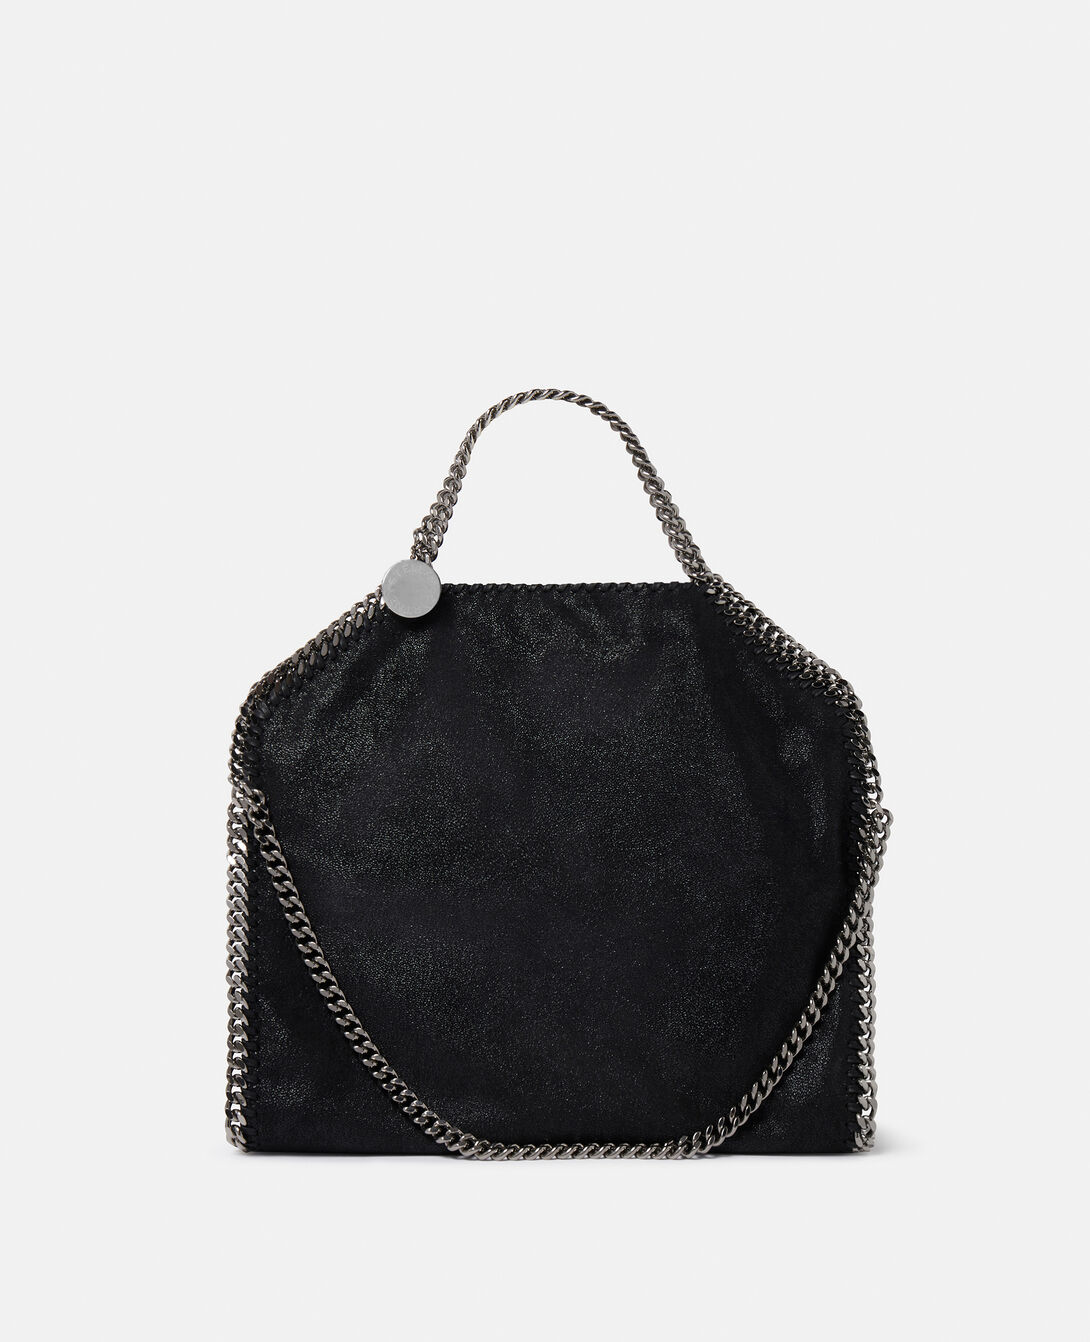 lv small black bag